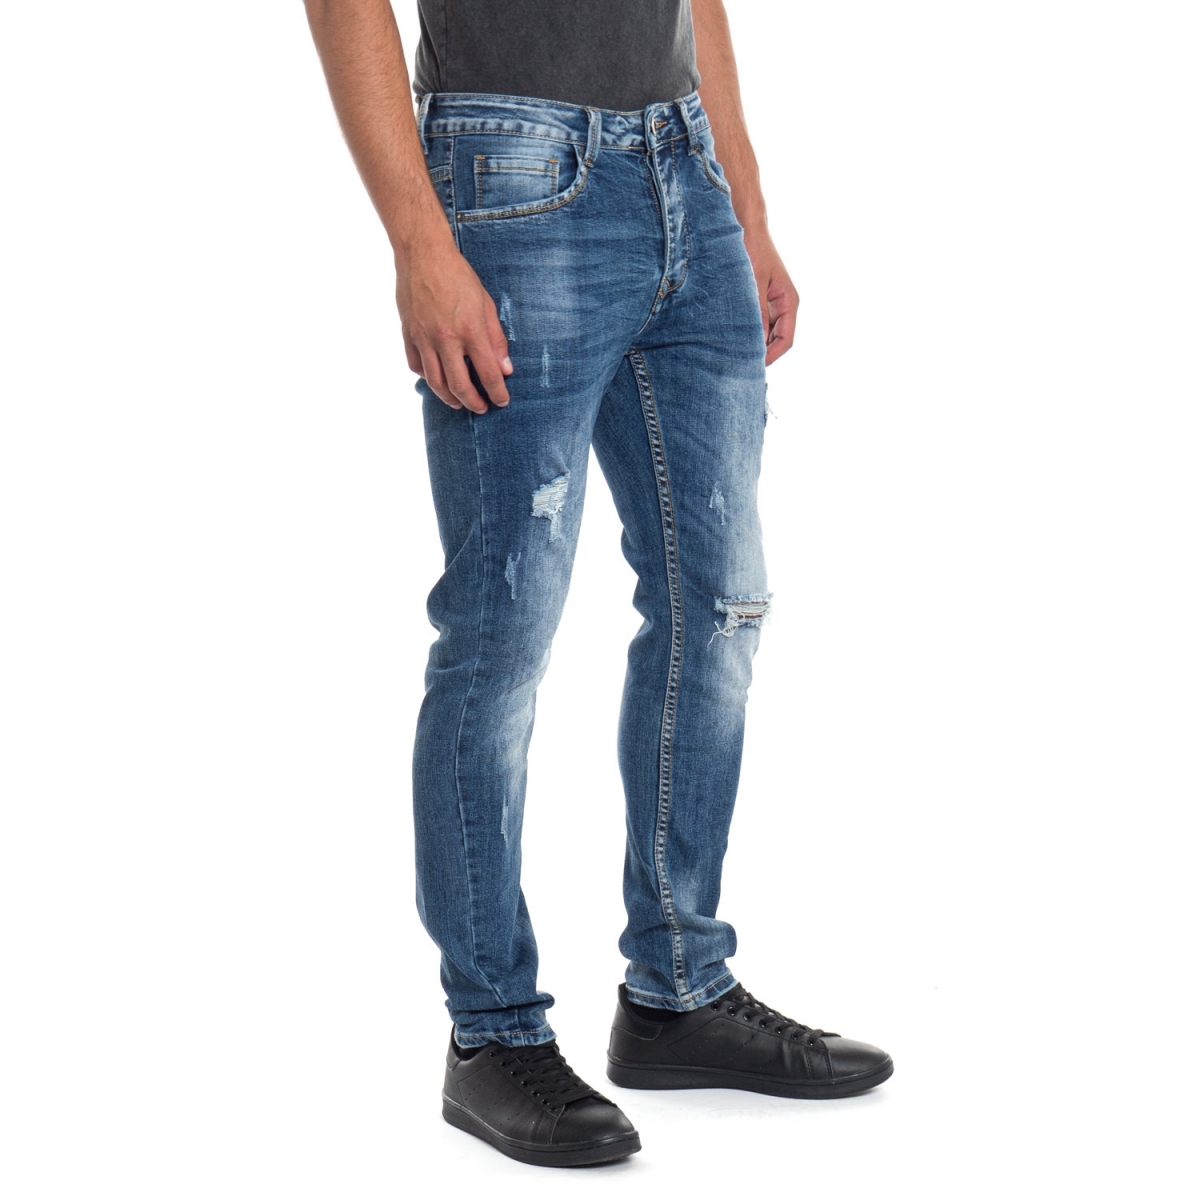 abbigliamento Jeans uomo Jeans slim fit LPHM1049P LANDEK PARK Cafedelmar Shop